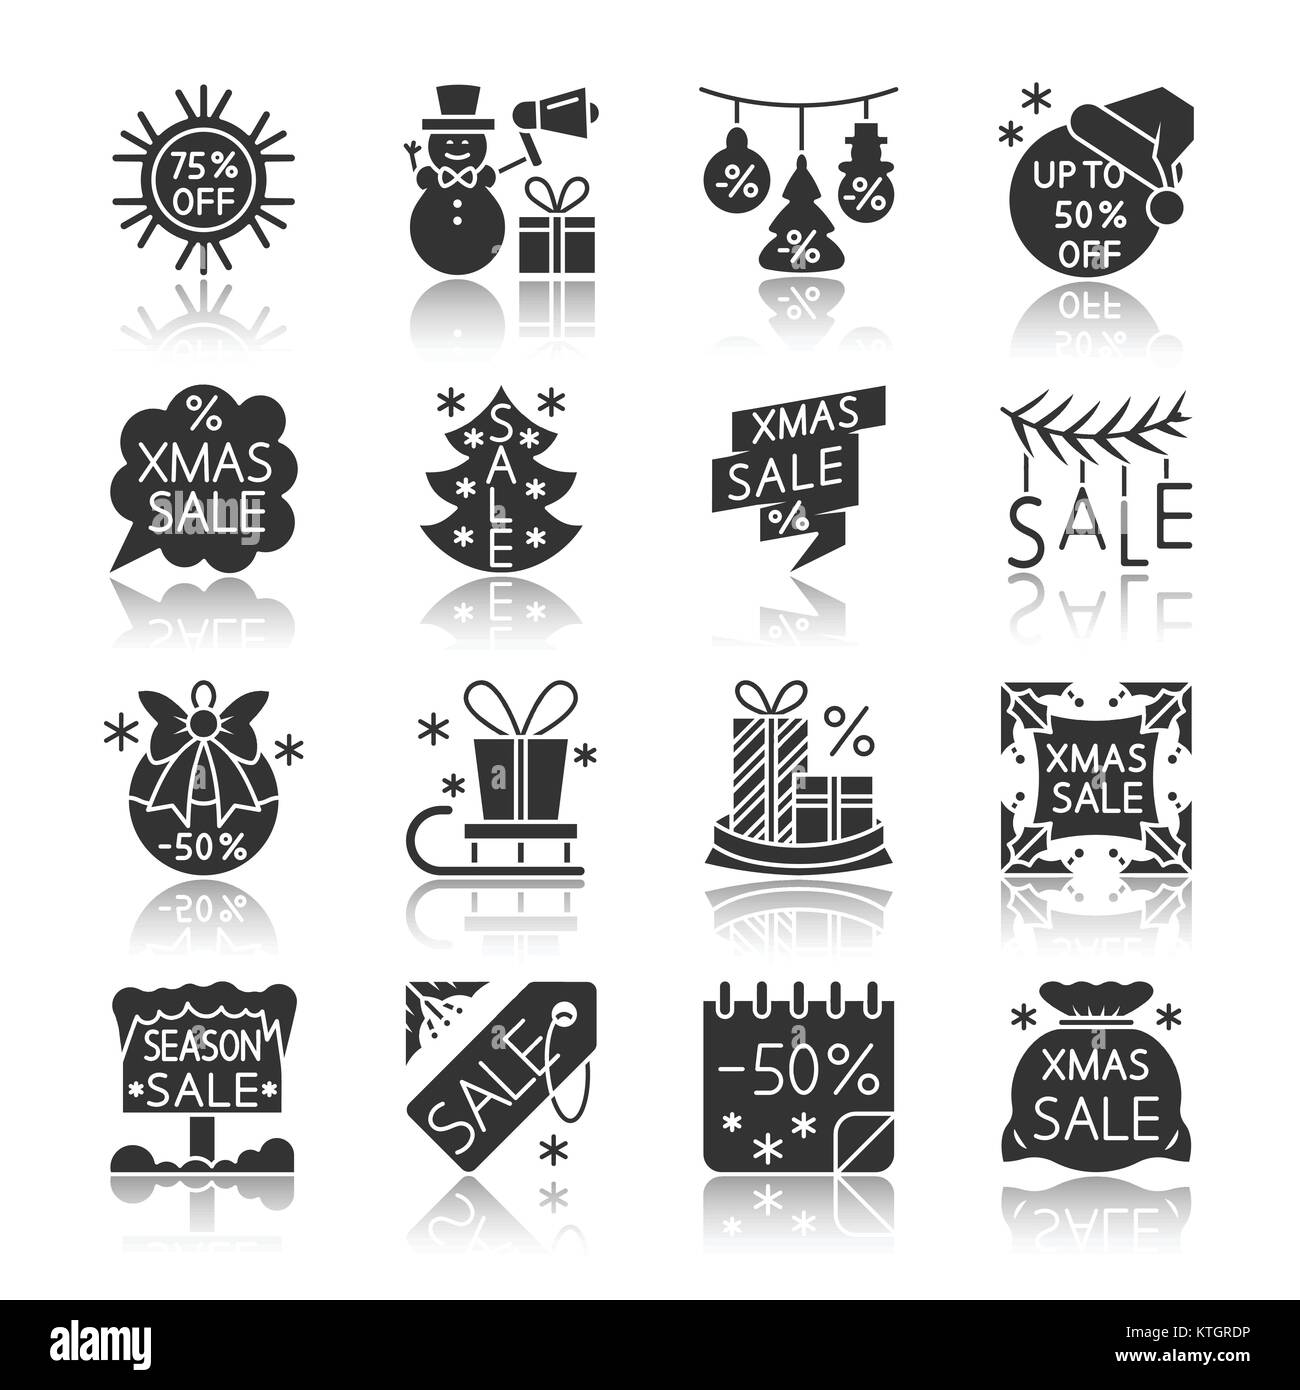 Weihnachtszeit Verkauf schwarze Silhouette mit Reflexion Icon Set. Vektor Spiel monochrome flache Design symbol Collection. Einfache grafische Piktogramm p Stock Vektor